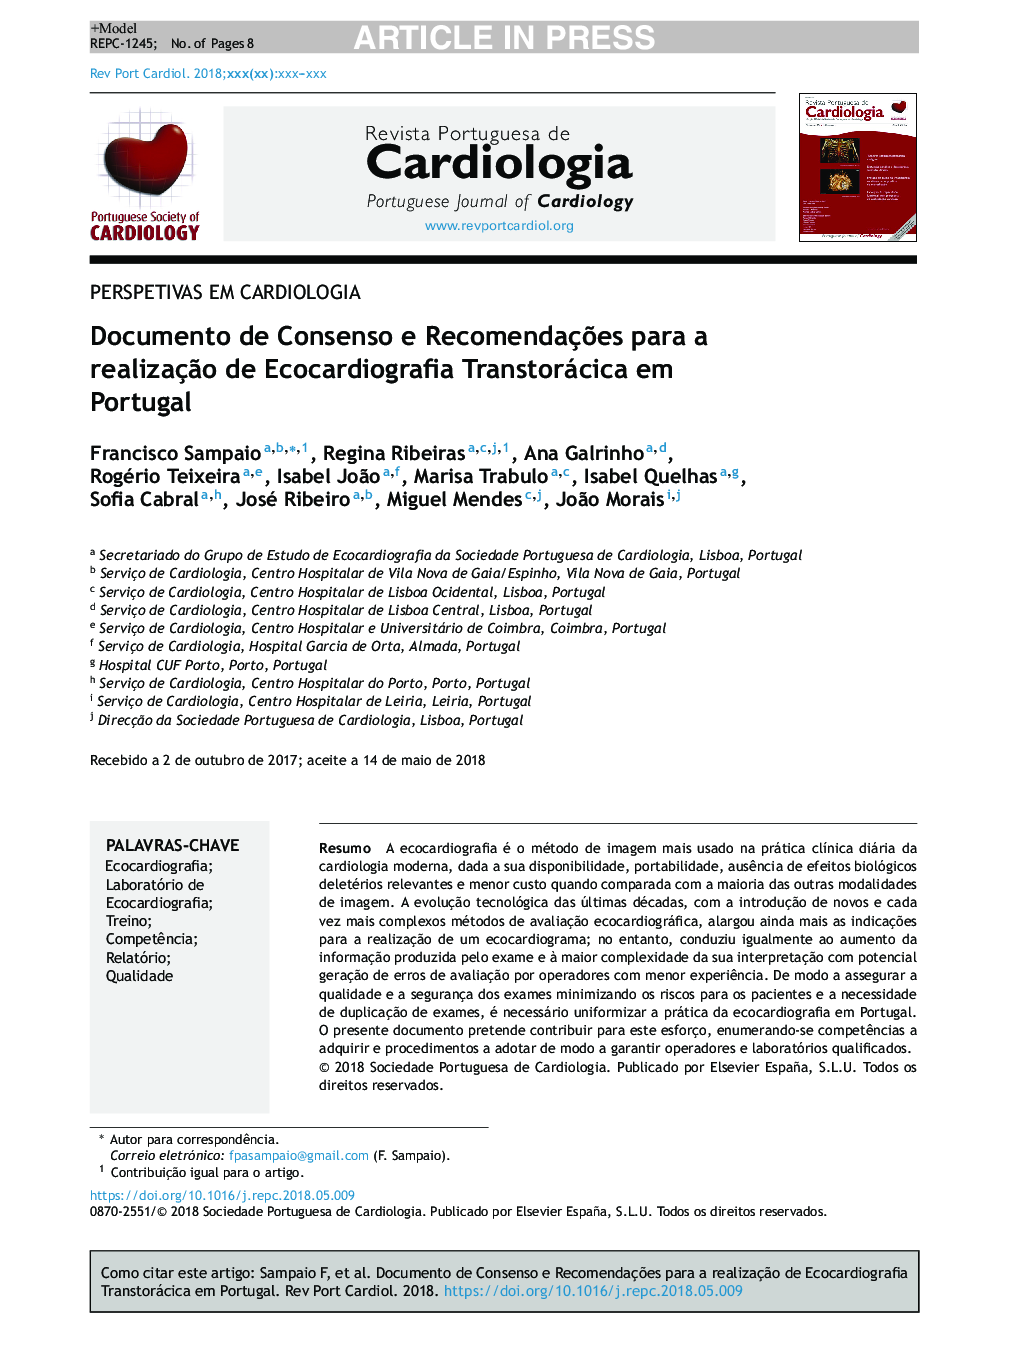 Documento de Consenso e RecomendaçÃµes para a realizaçÃ£o de Ecocardiografia Transtorácica em Portugal